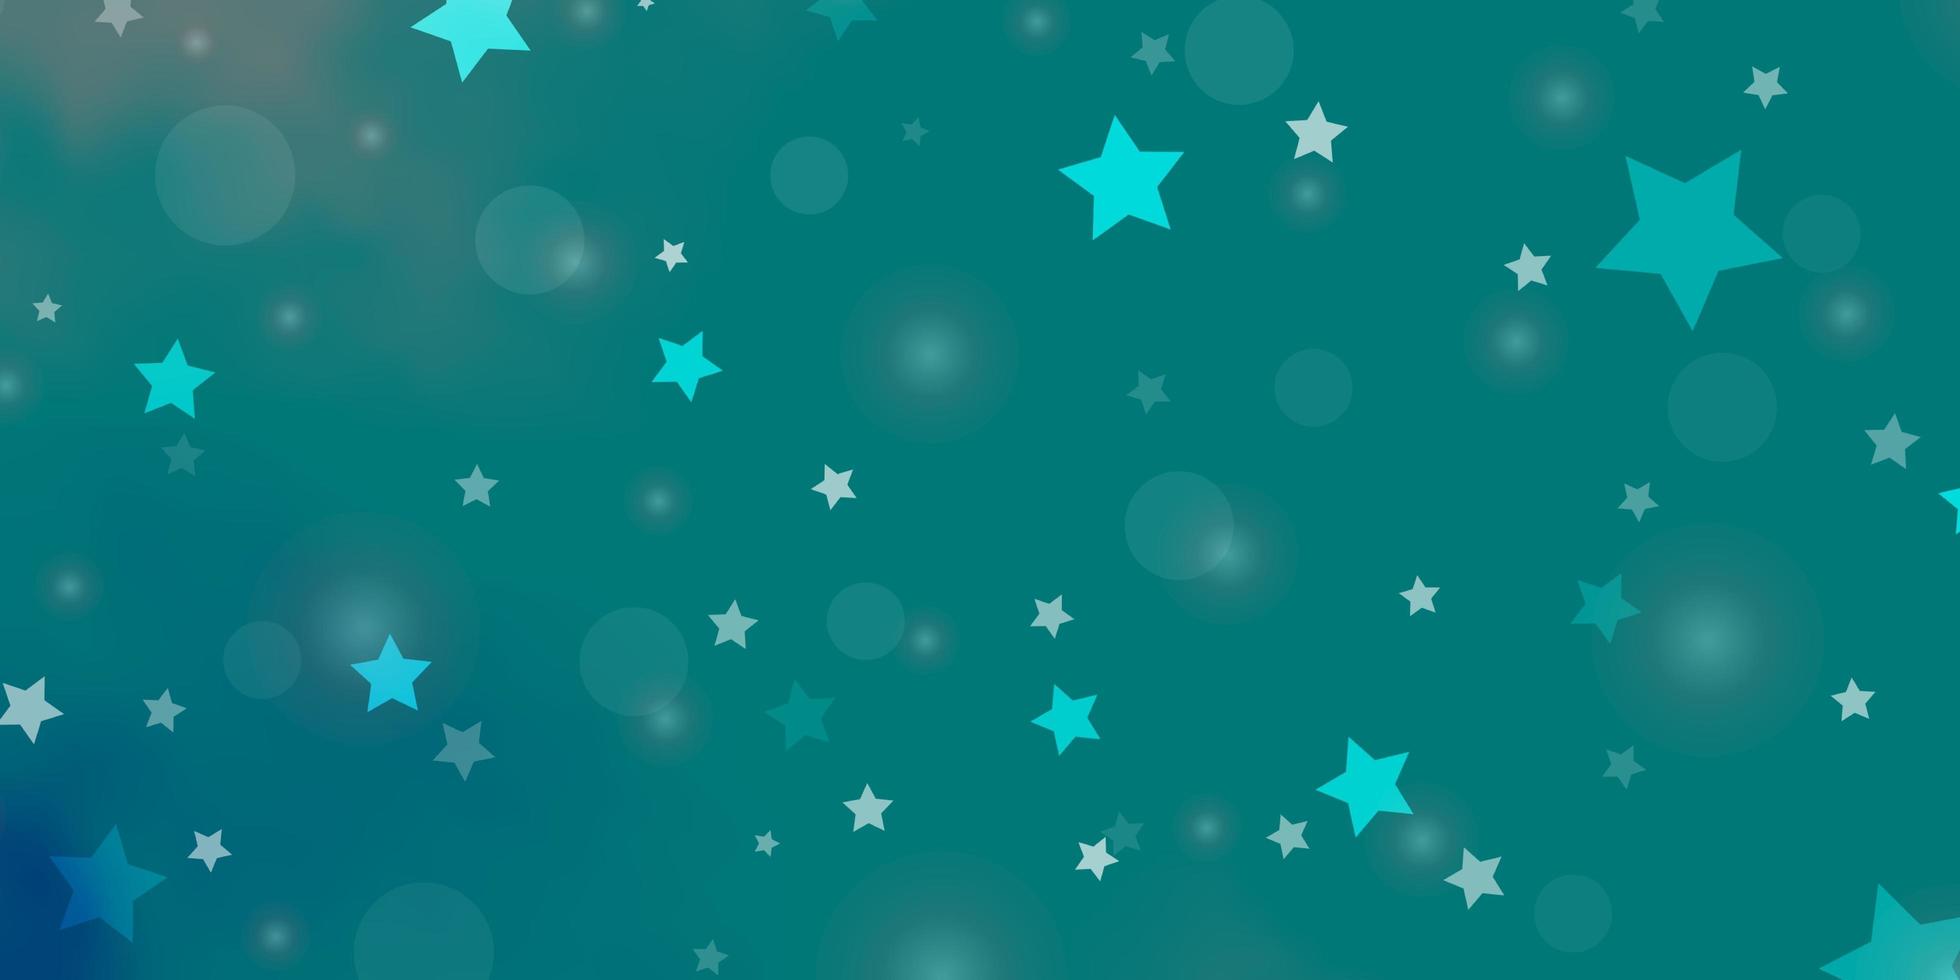 motivo vettoriale azzurro verde con cerchi stelle glitter illustrazione astratta con gocce colorate motivo a stelle per la progettazione di sfondi in tessuto